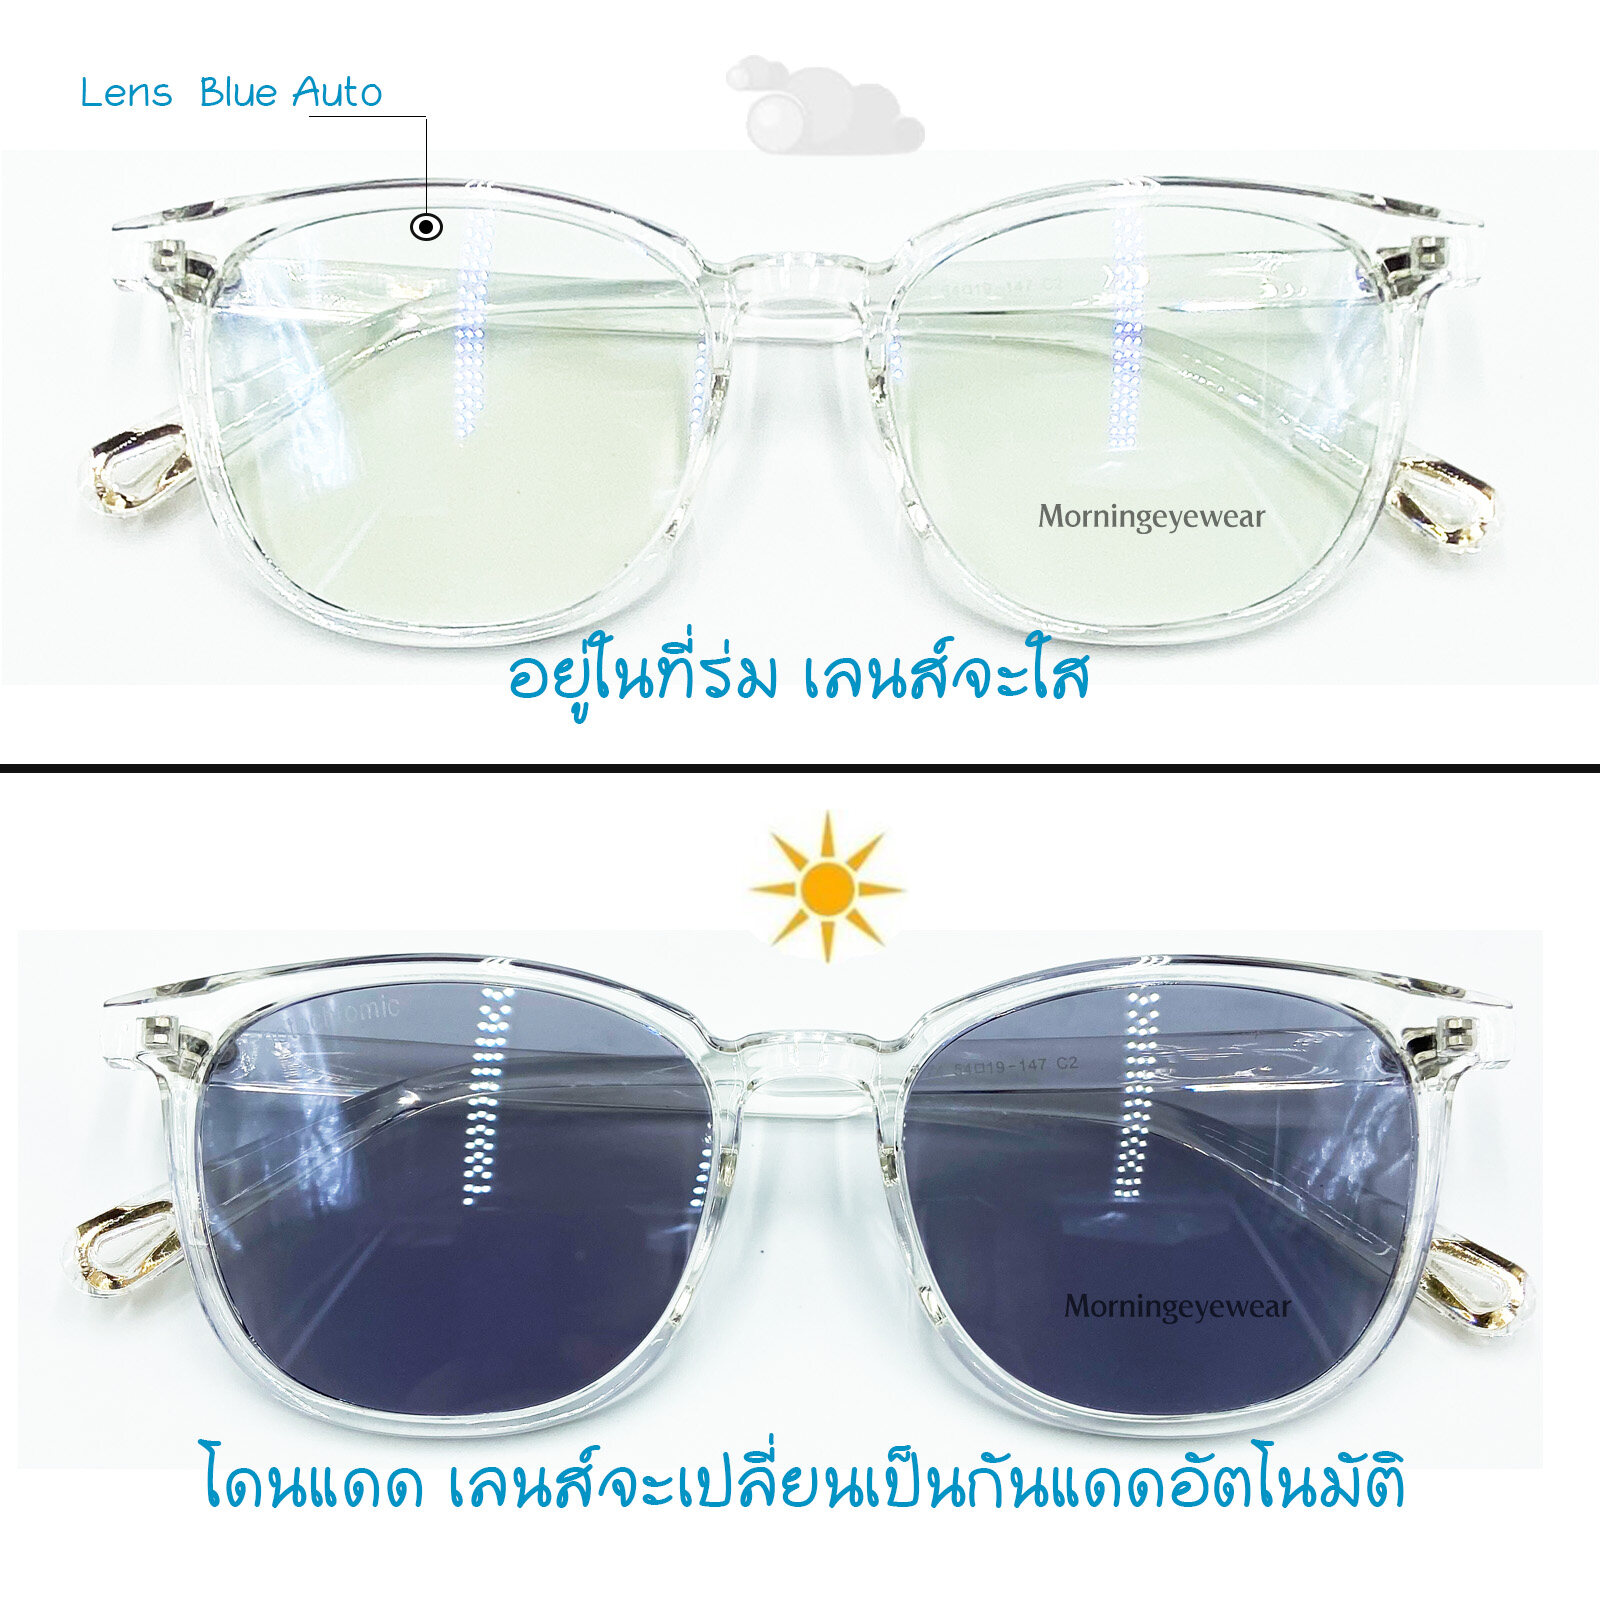 แว่นกรองแสงพร้อมเลนส์บลูบล็อค+ออโต้ (แท้) กรอบTRยืดหยุ่น  กรองแสงสีฟ้า+ออกแดดเปลี่ยนสี(สำหรับสายตาปกติ) Blue+Auto